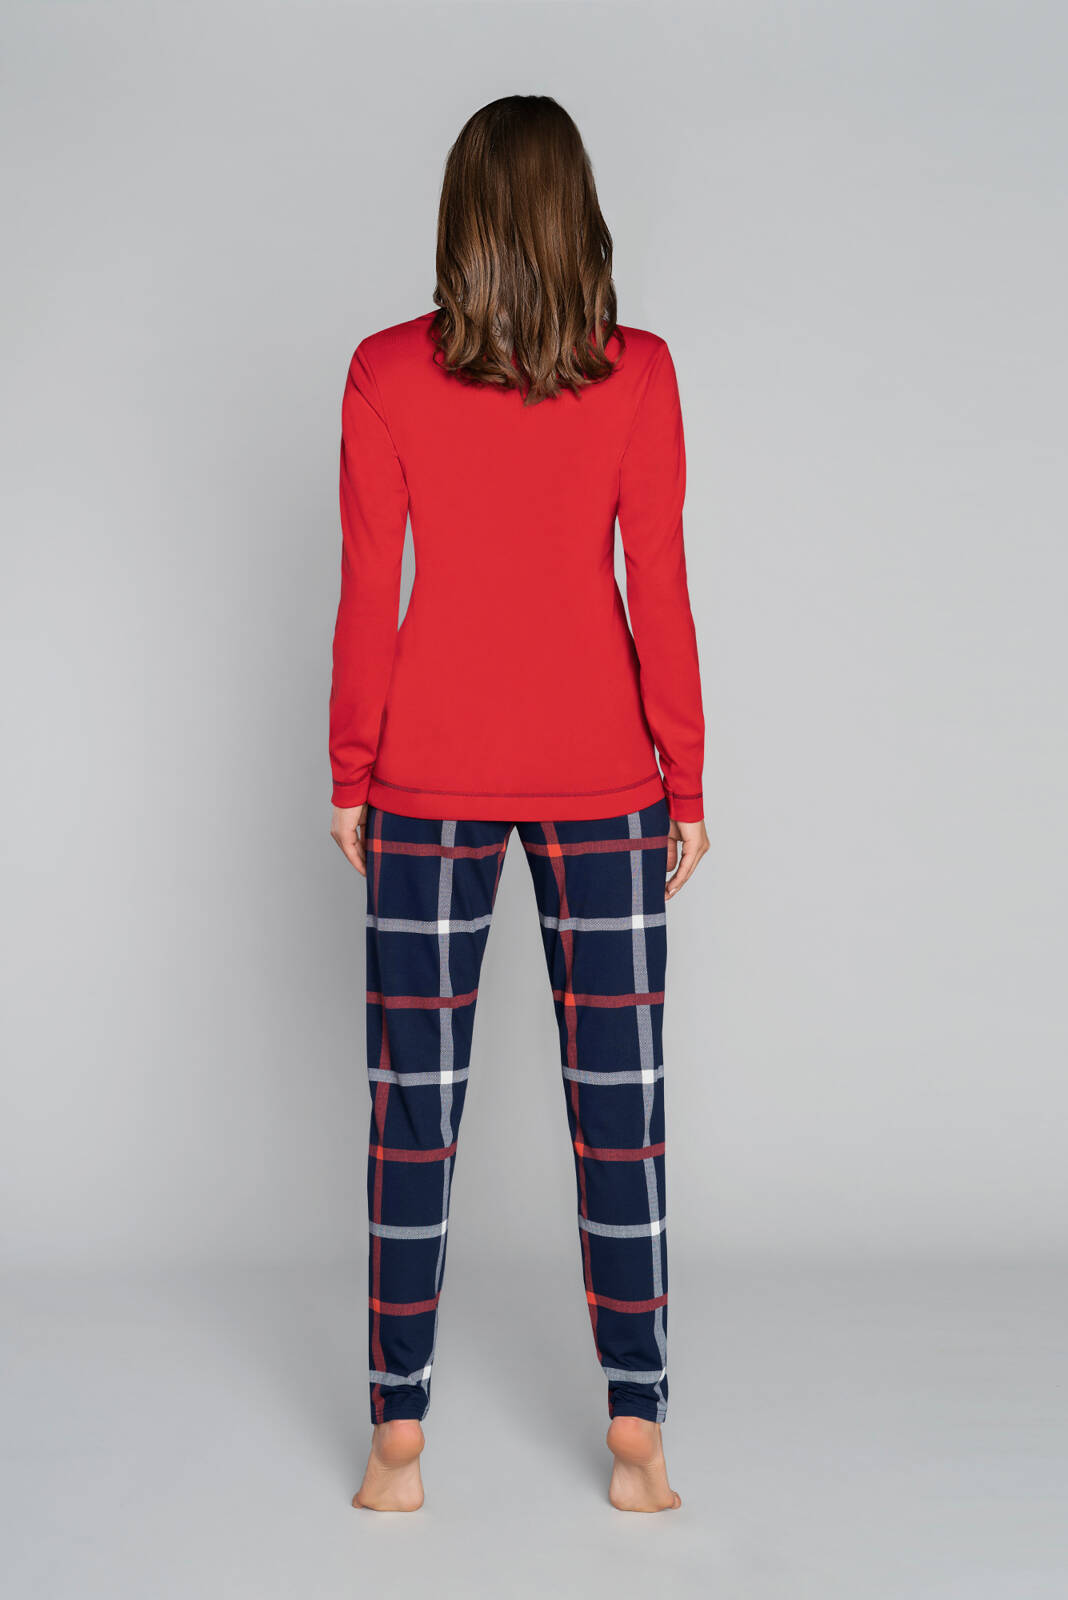 Langärmliger Pyjama für Damen von Izera. lange Hose rot/print